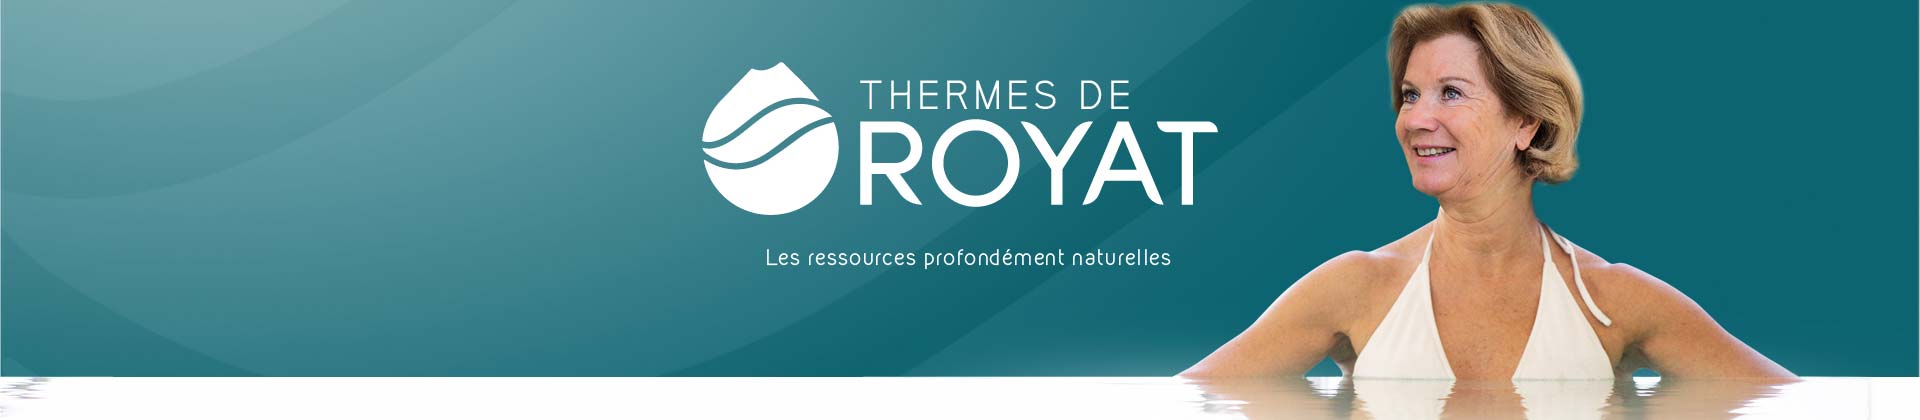 Recrutement Septembre-Octobre 2019 aux Thermes de Royat - Auvergne